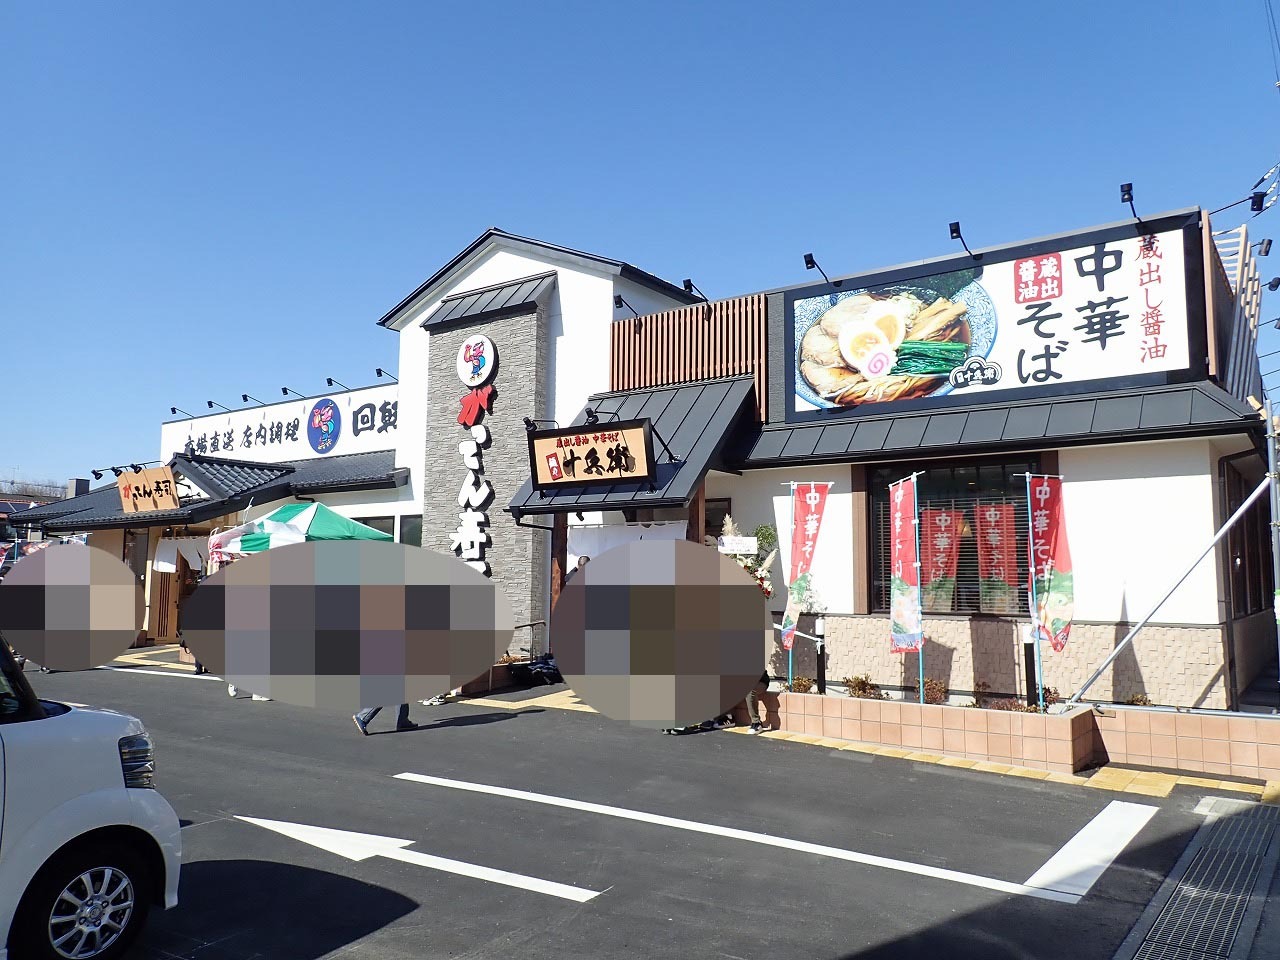 向かって左が「がってん寿司」、右が「麺や十兵衛」で、店舗名はどちらも川越藤間店です